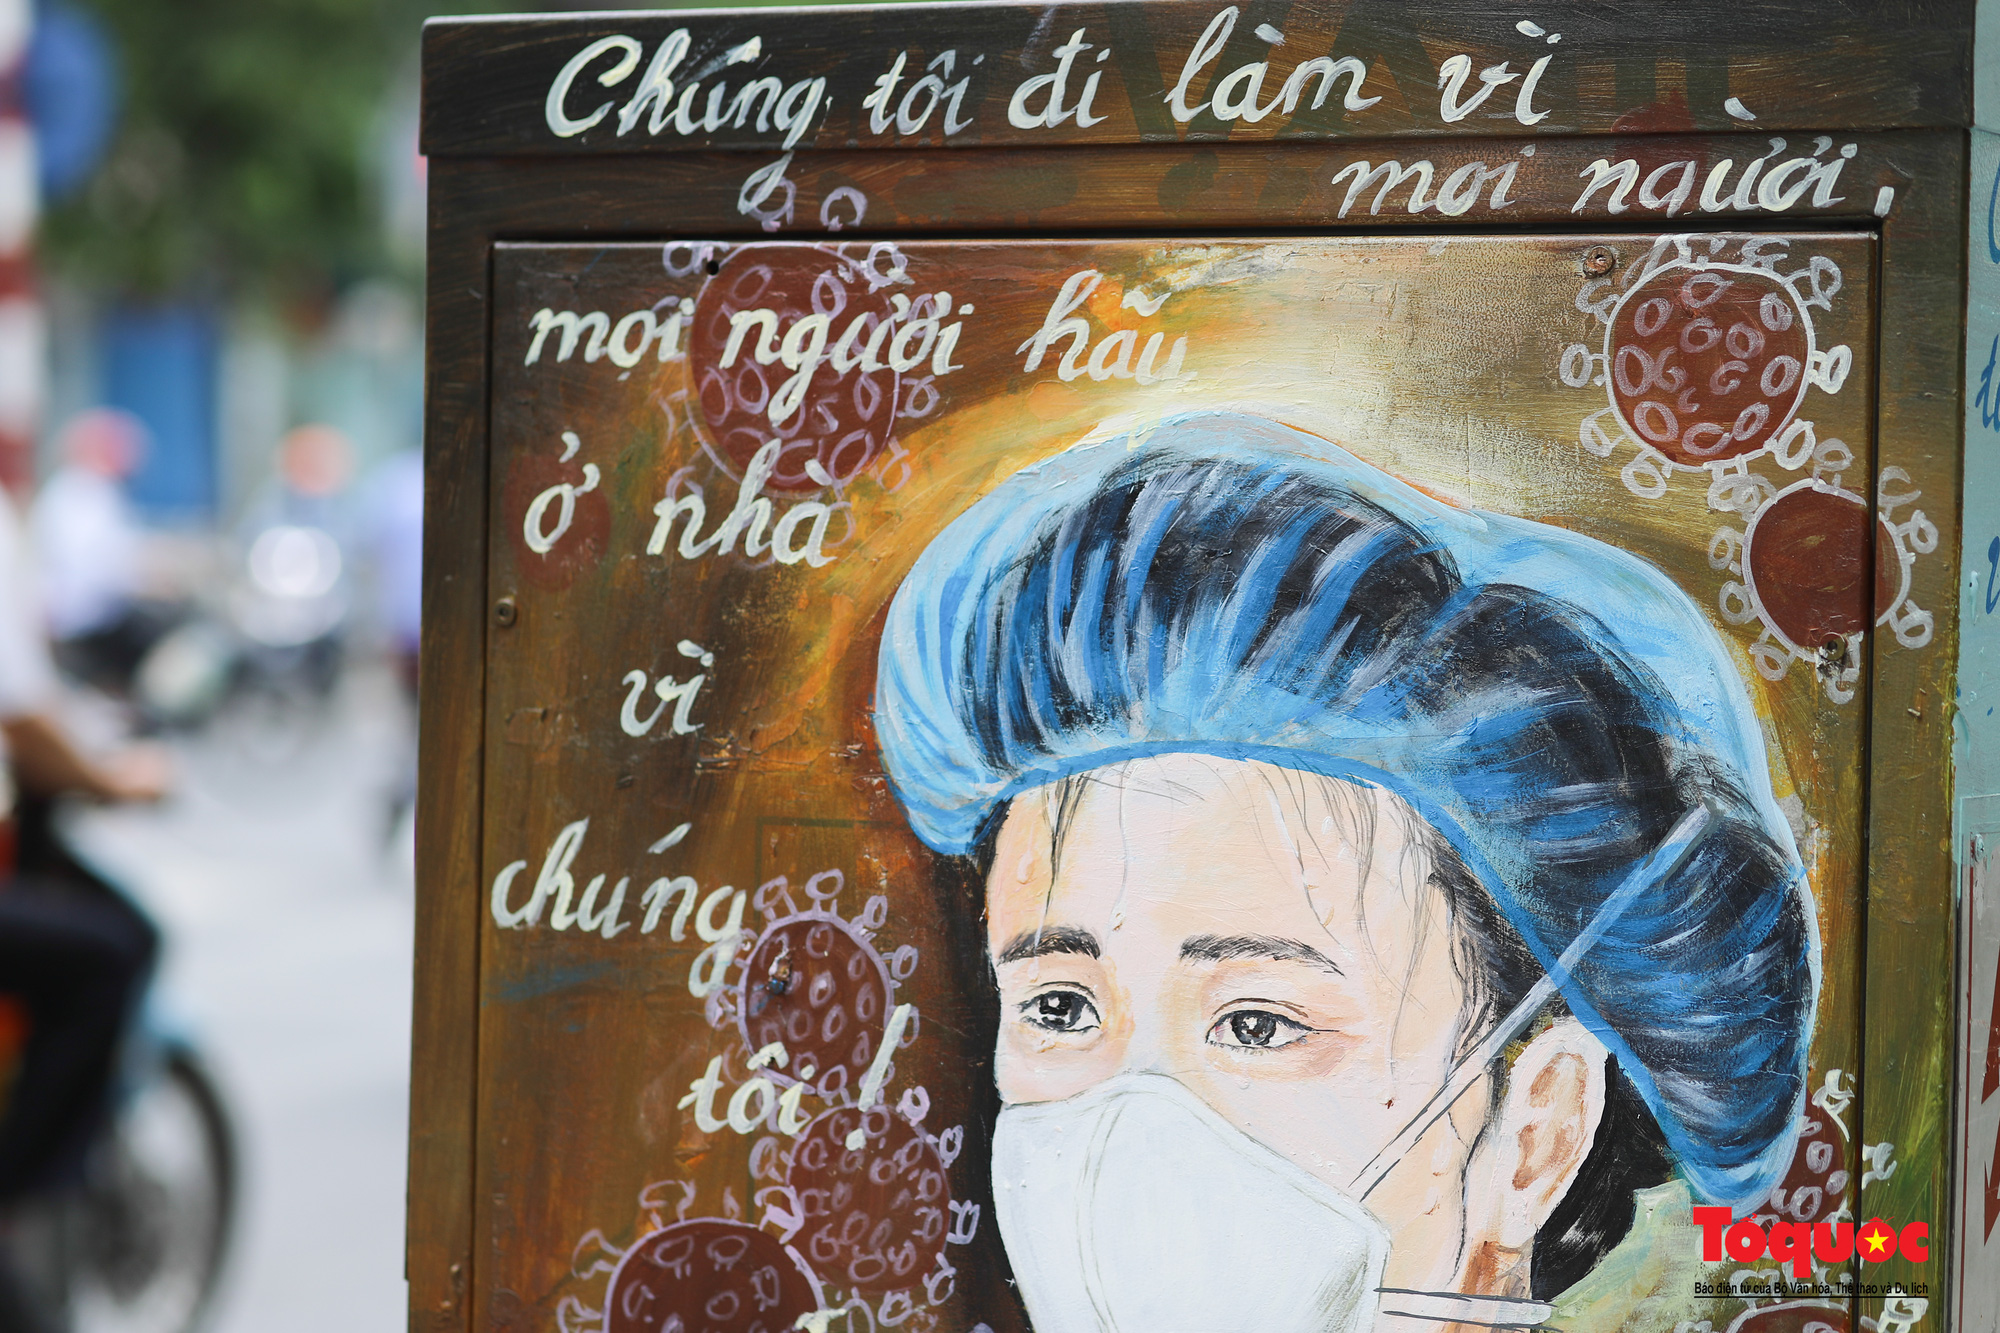 Pano, hình ảnh cổ động phòng chống dịch COVID-19 trên khắp đường phố Hà Nội